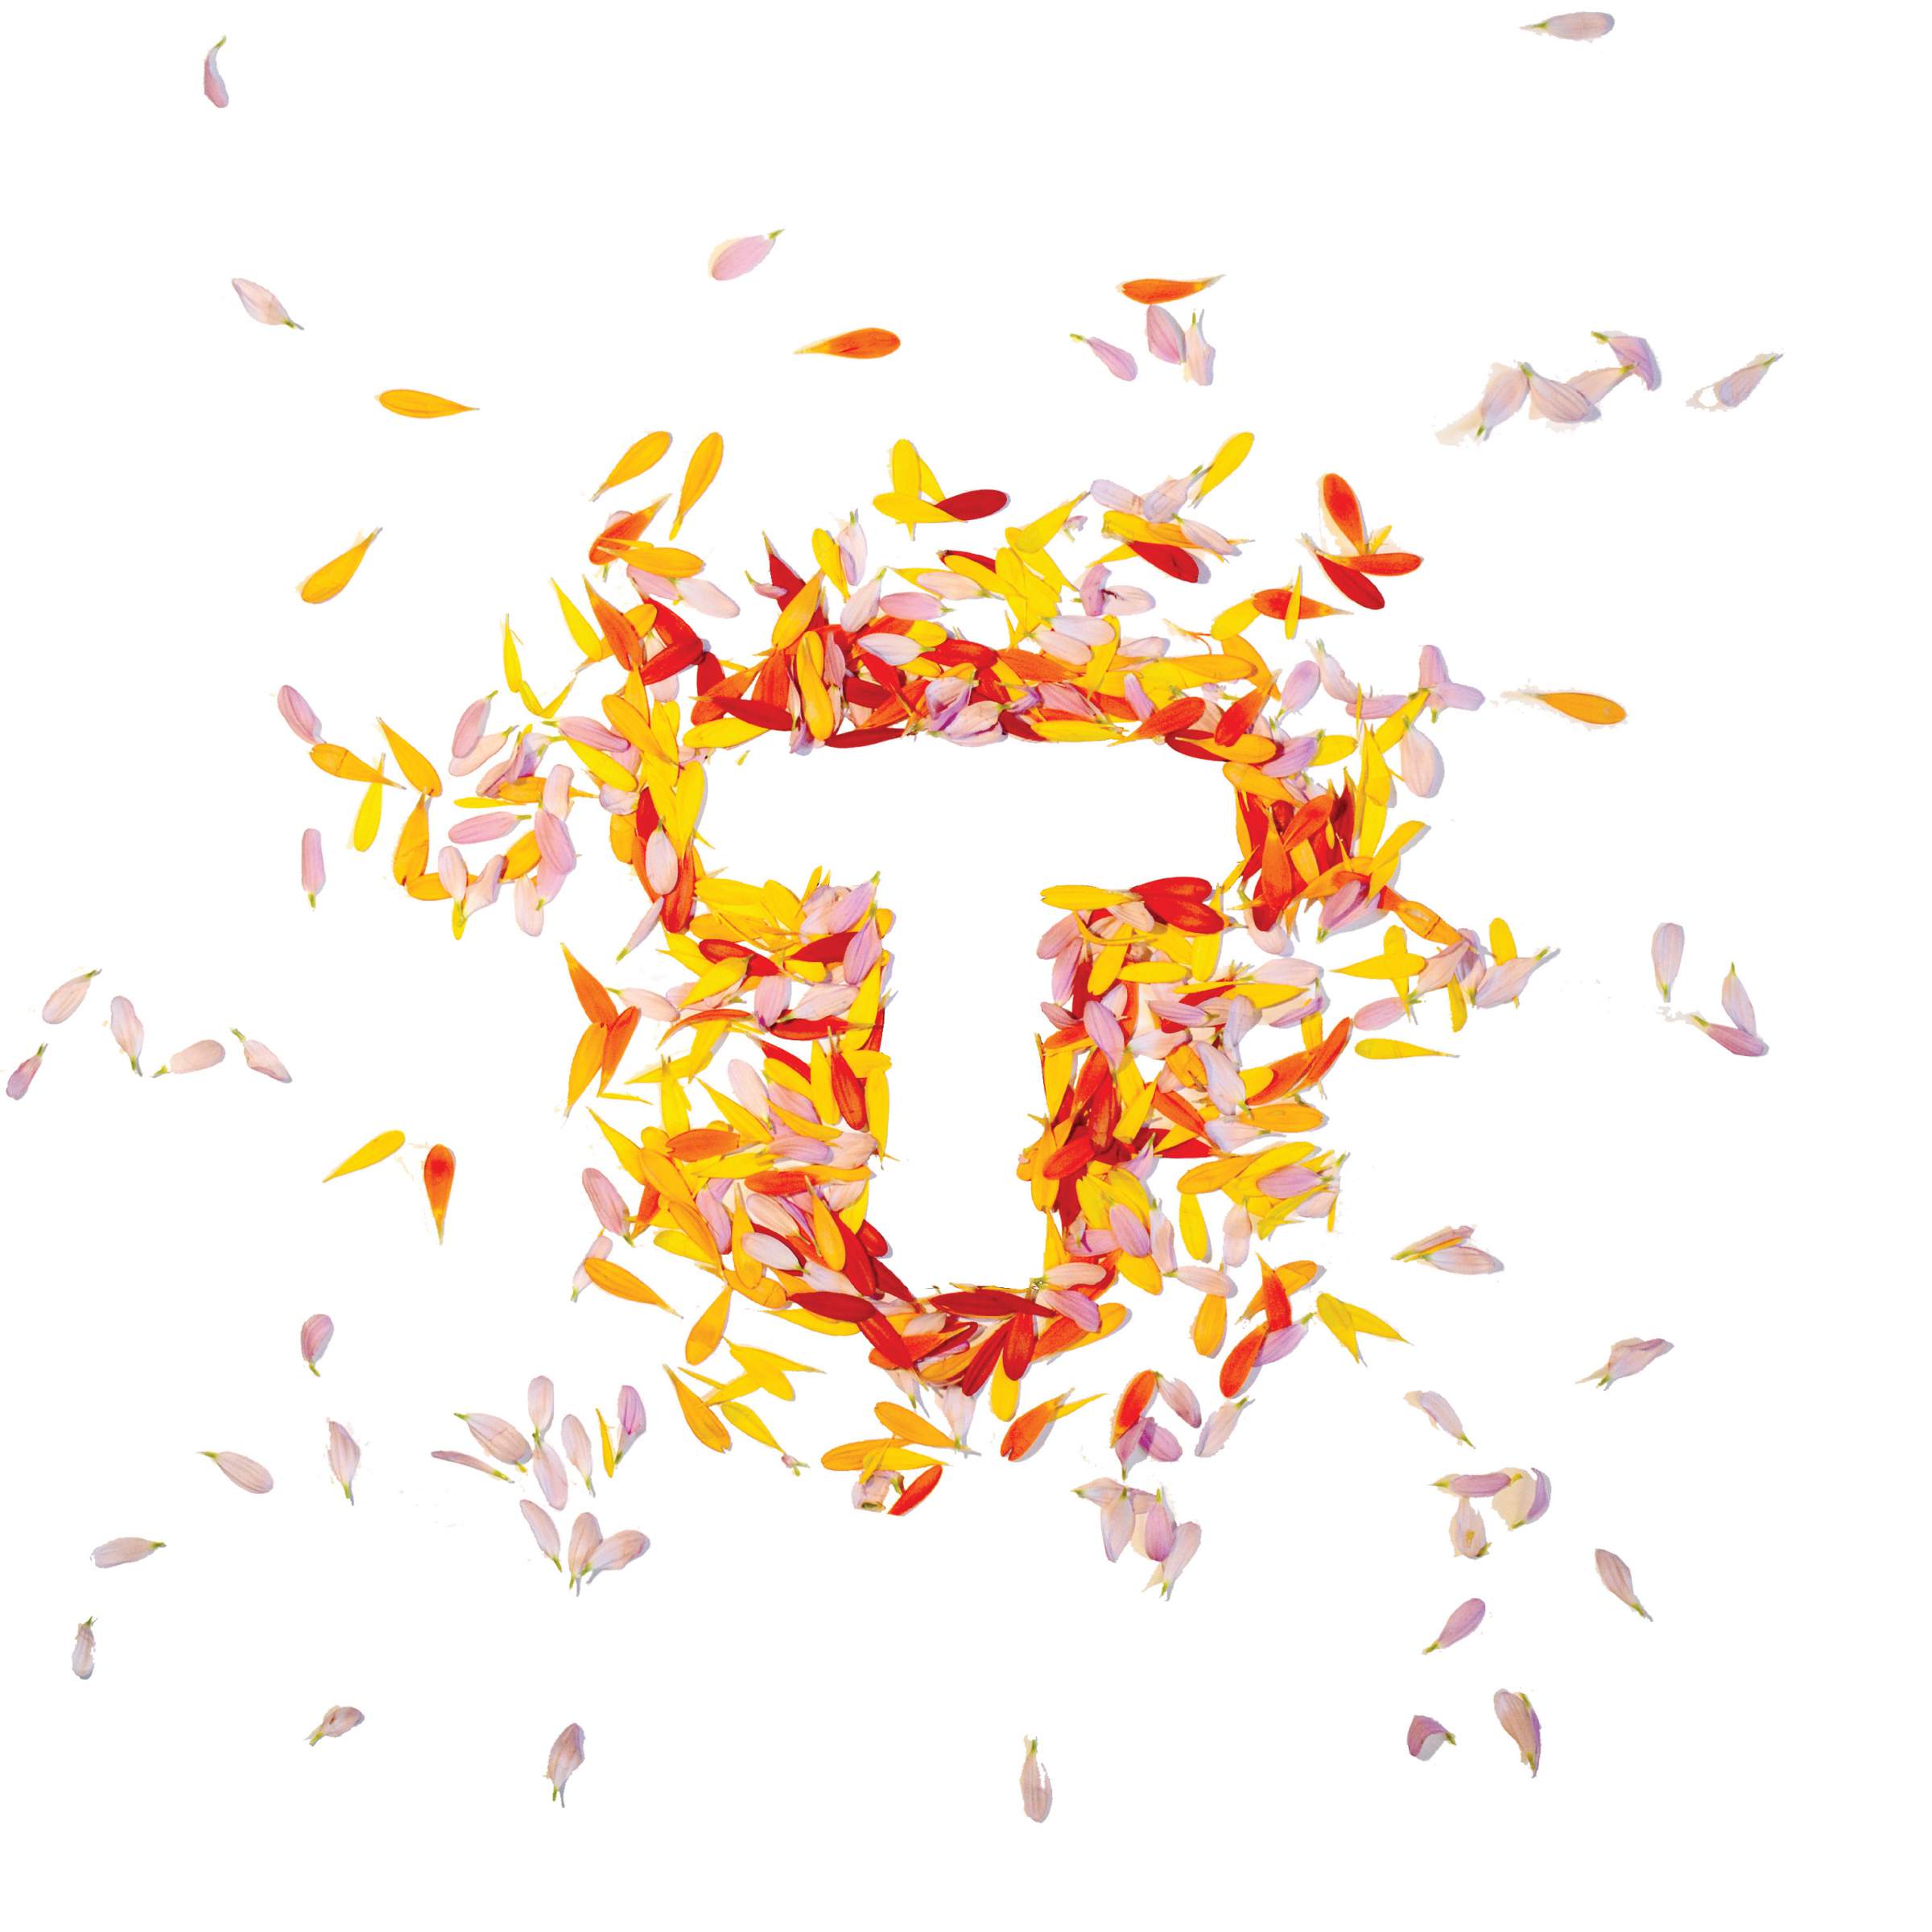 LANDLAB Tuin Idee 2017 logo